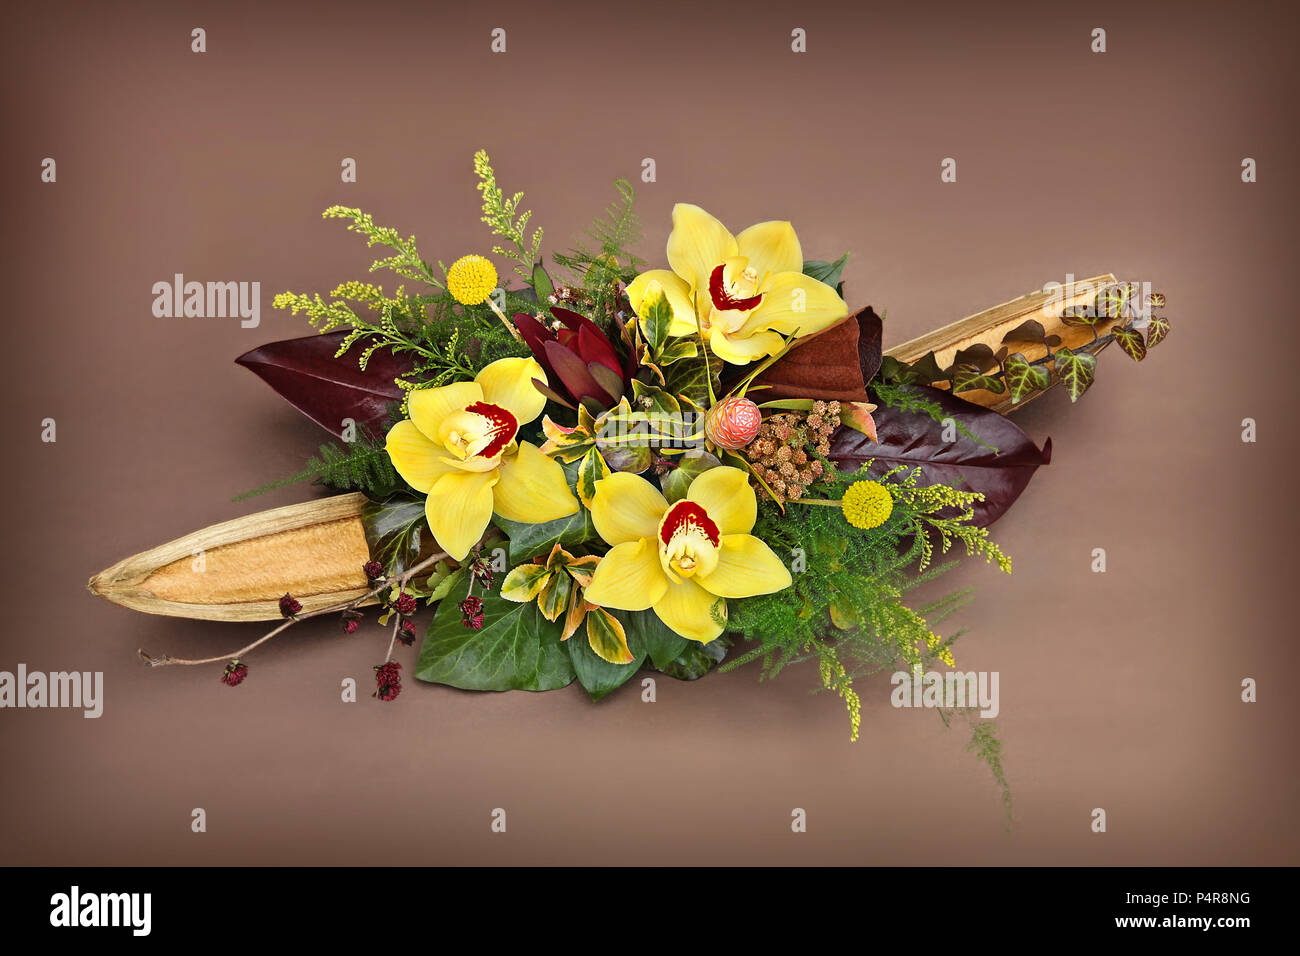 Alle natürlichen Blumenarrangements - handgefertigt. Studioaufnahme eines Blumenarrangements auf einem pastellfarbenen Hintergrund. Stockfoto